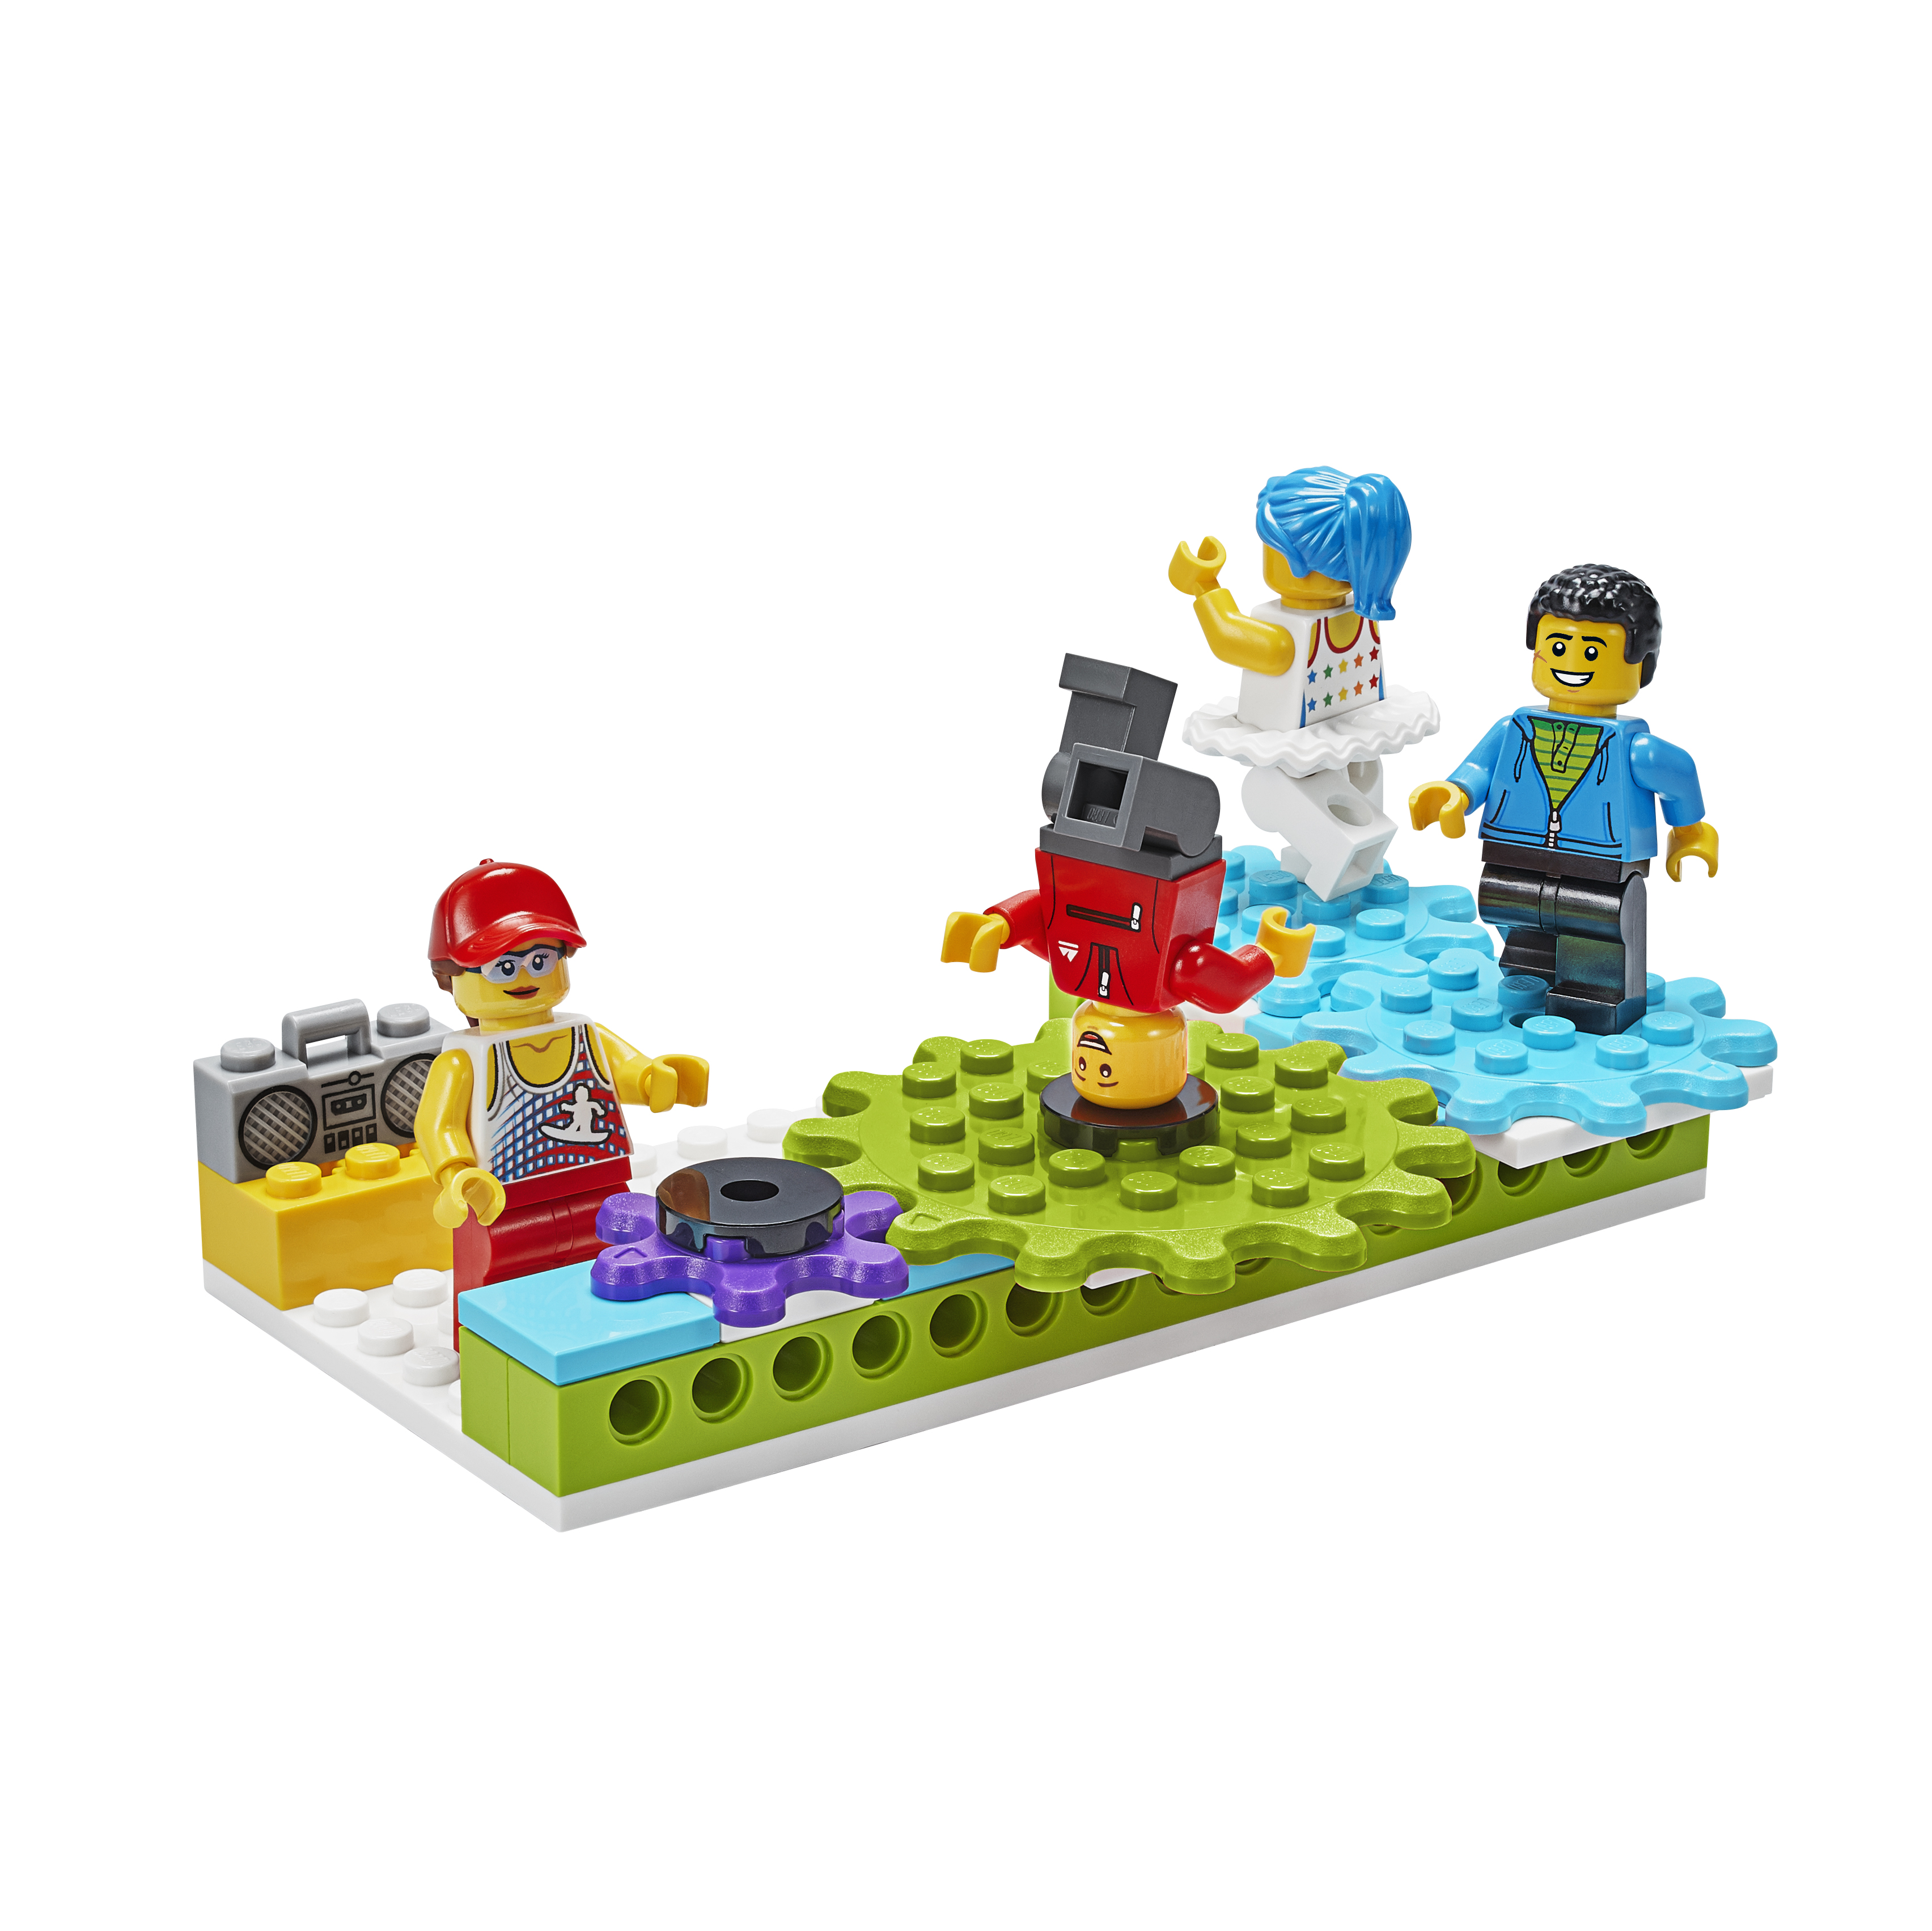 LEGO Education Image 1